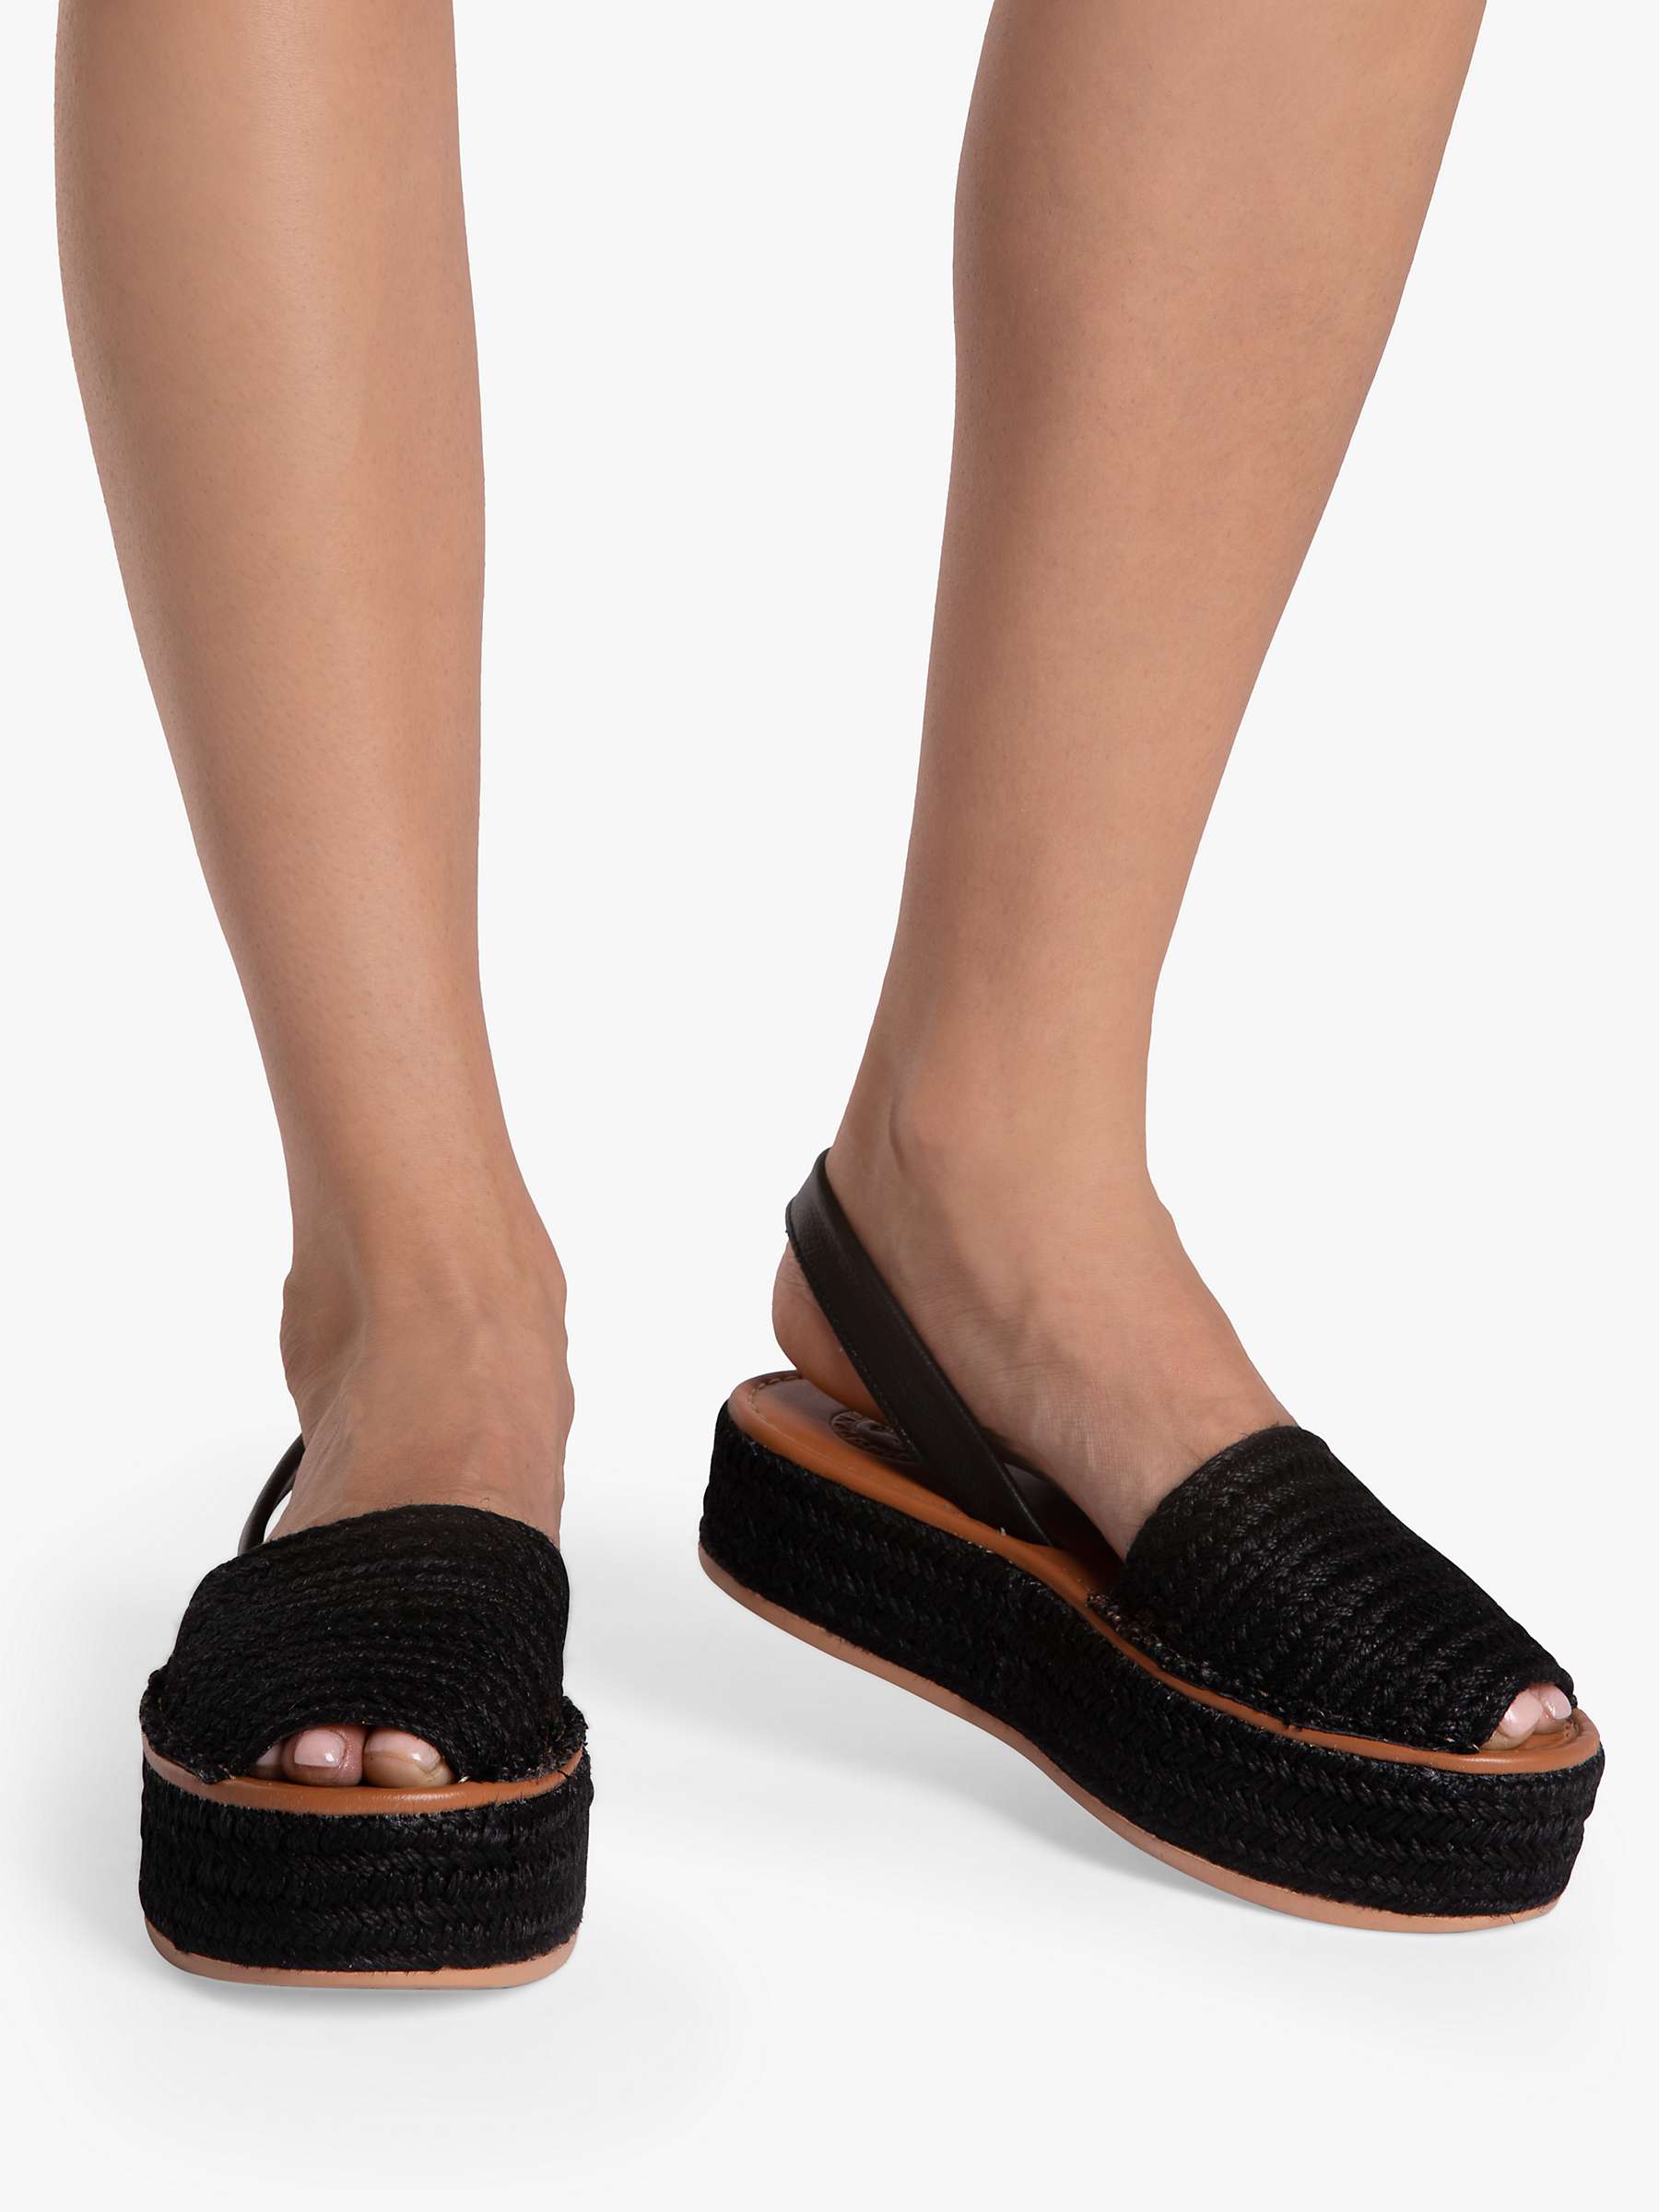 Buy Penelope Chilvers Plaited Jute Flatform Sandals, Black Online at johnlewis.com